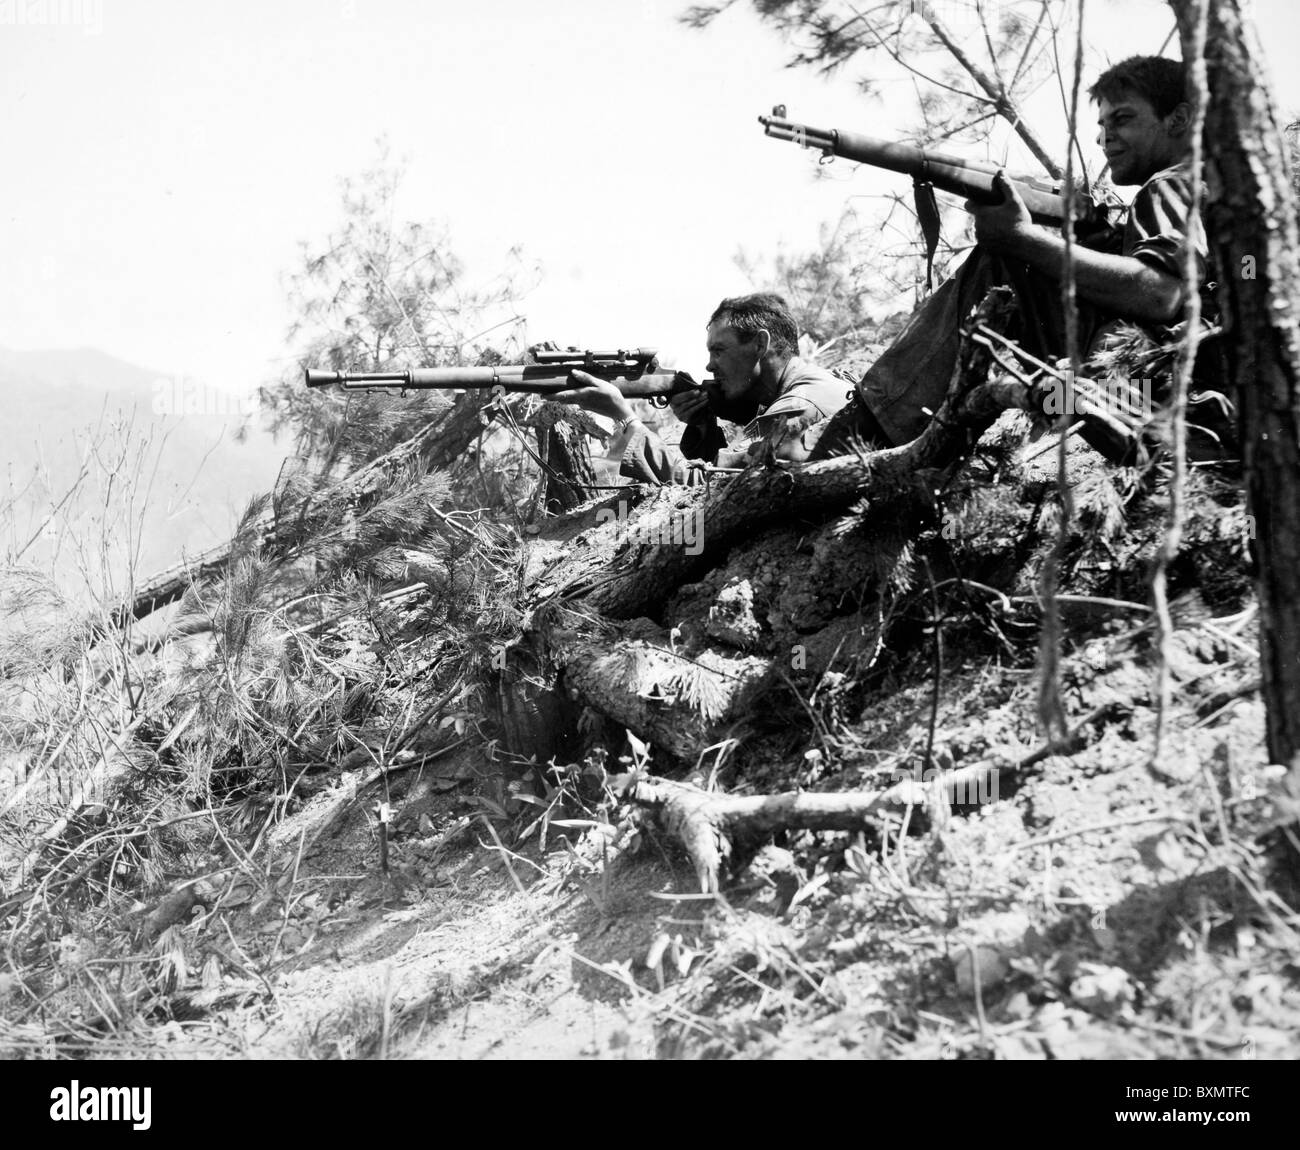 SFC Jack B Moore nutzt seine Scharfschützengewehr, während sein Partner ihm erstreckt sich nördlich von Inje, Korea. Beide Männer sind vom Unternehmen D, 187. Stockfoto